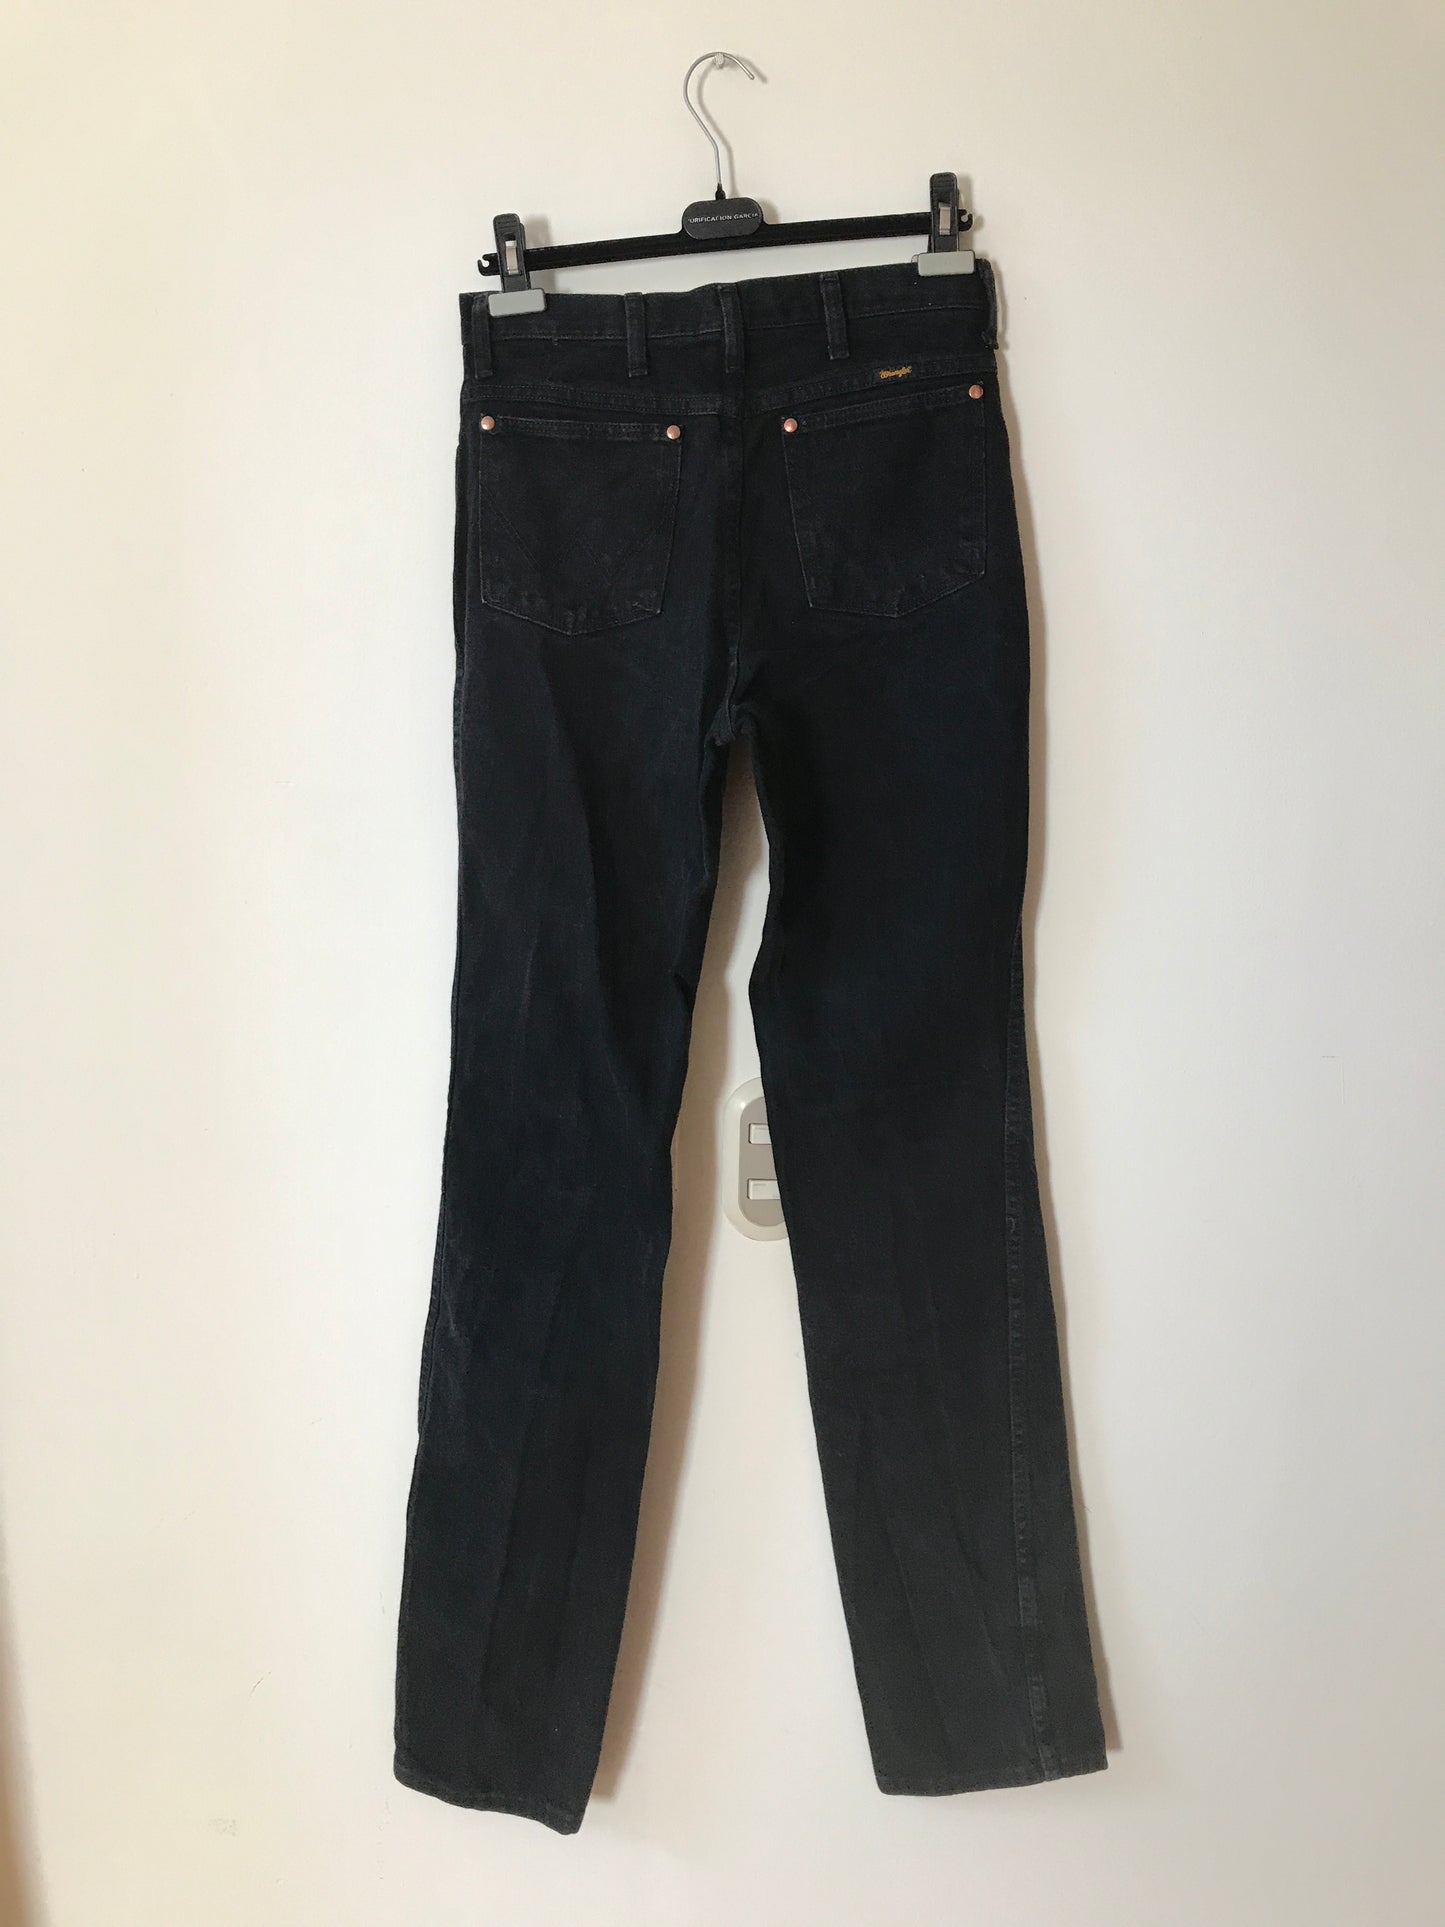 Jeans Wrangler Tiro Alto Vintage